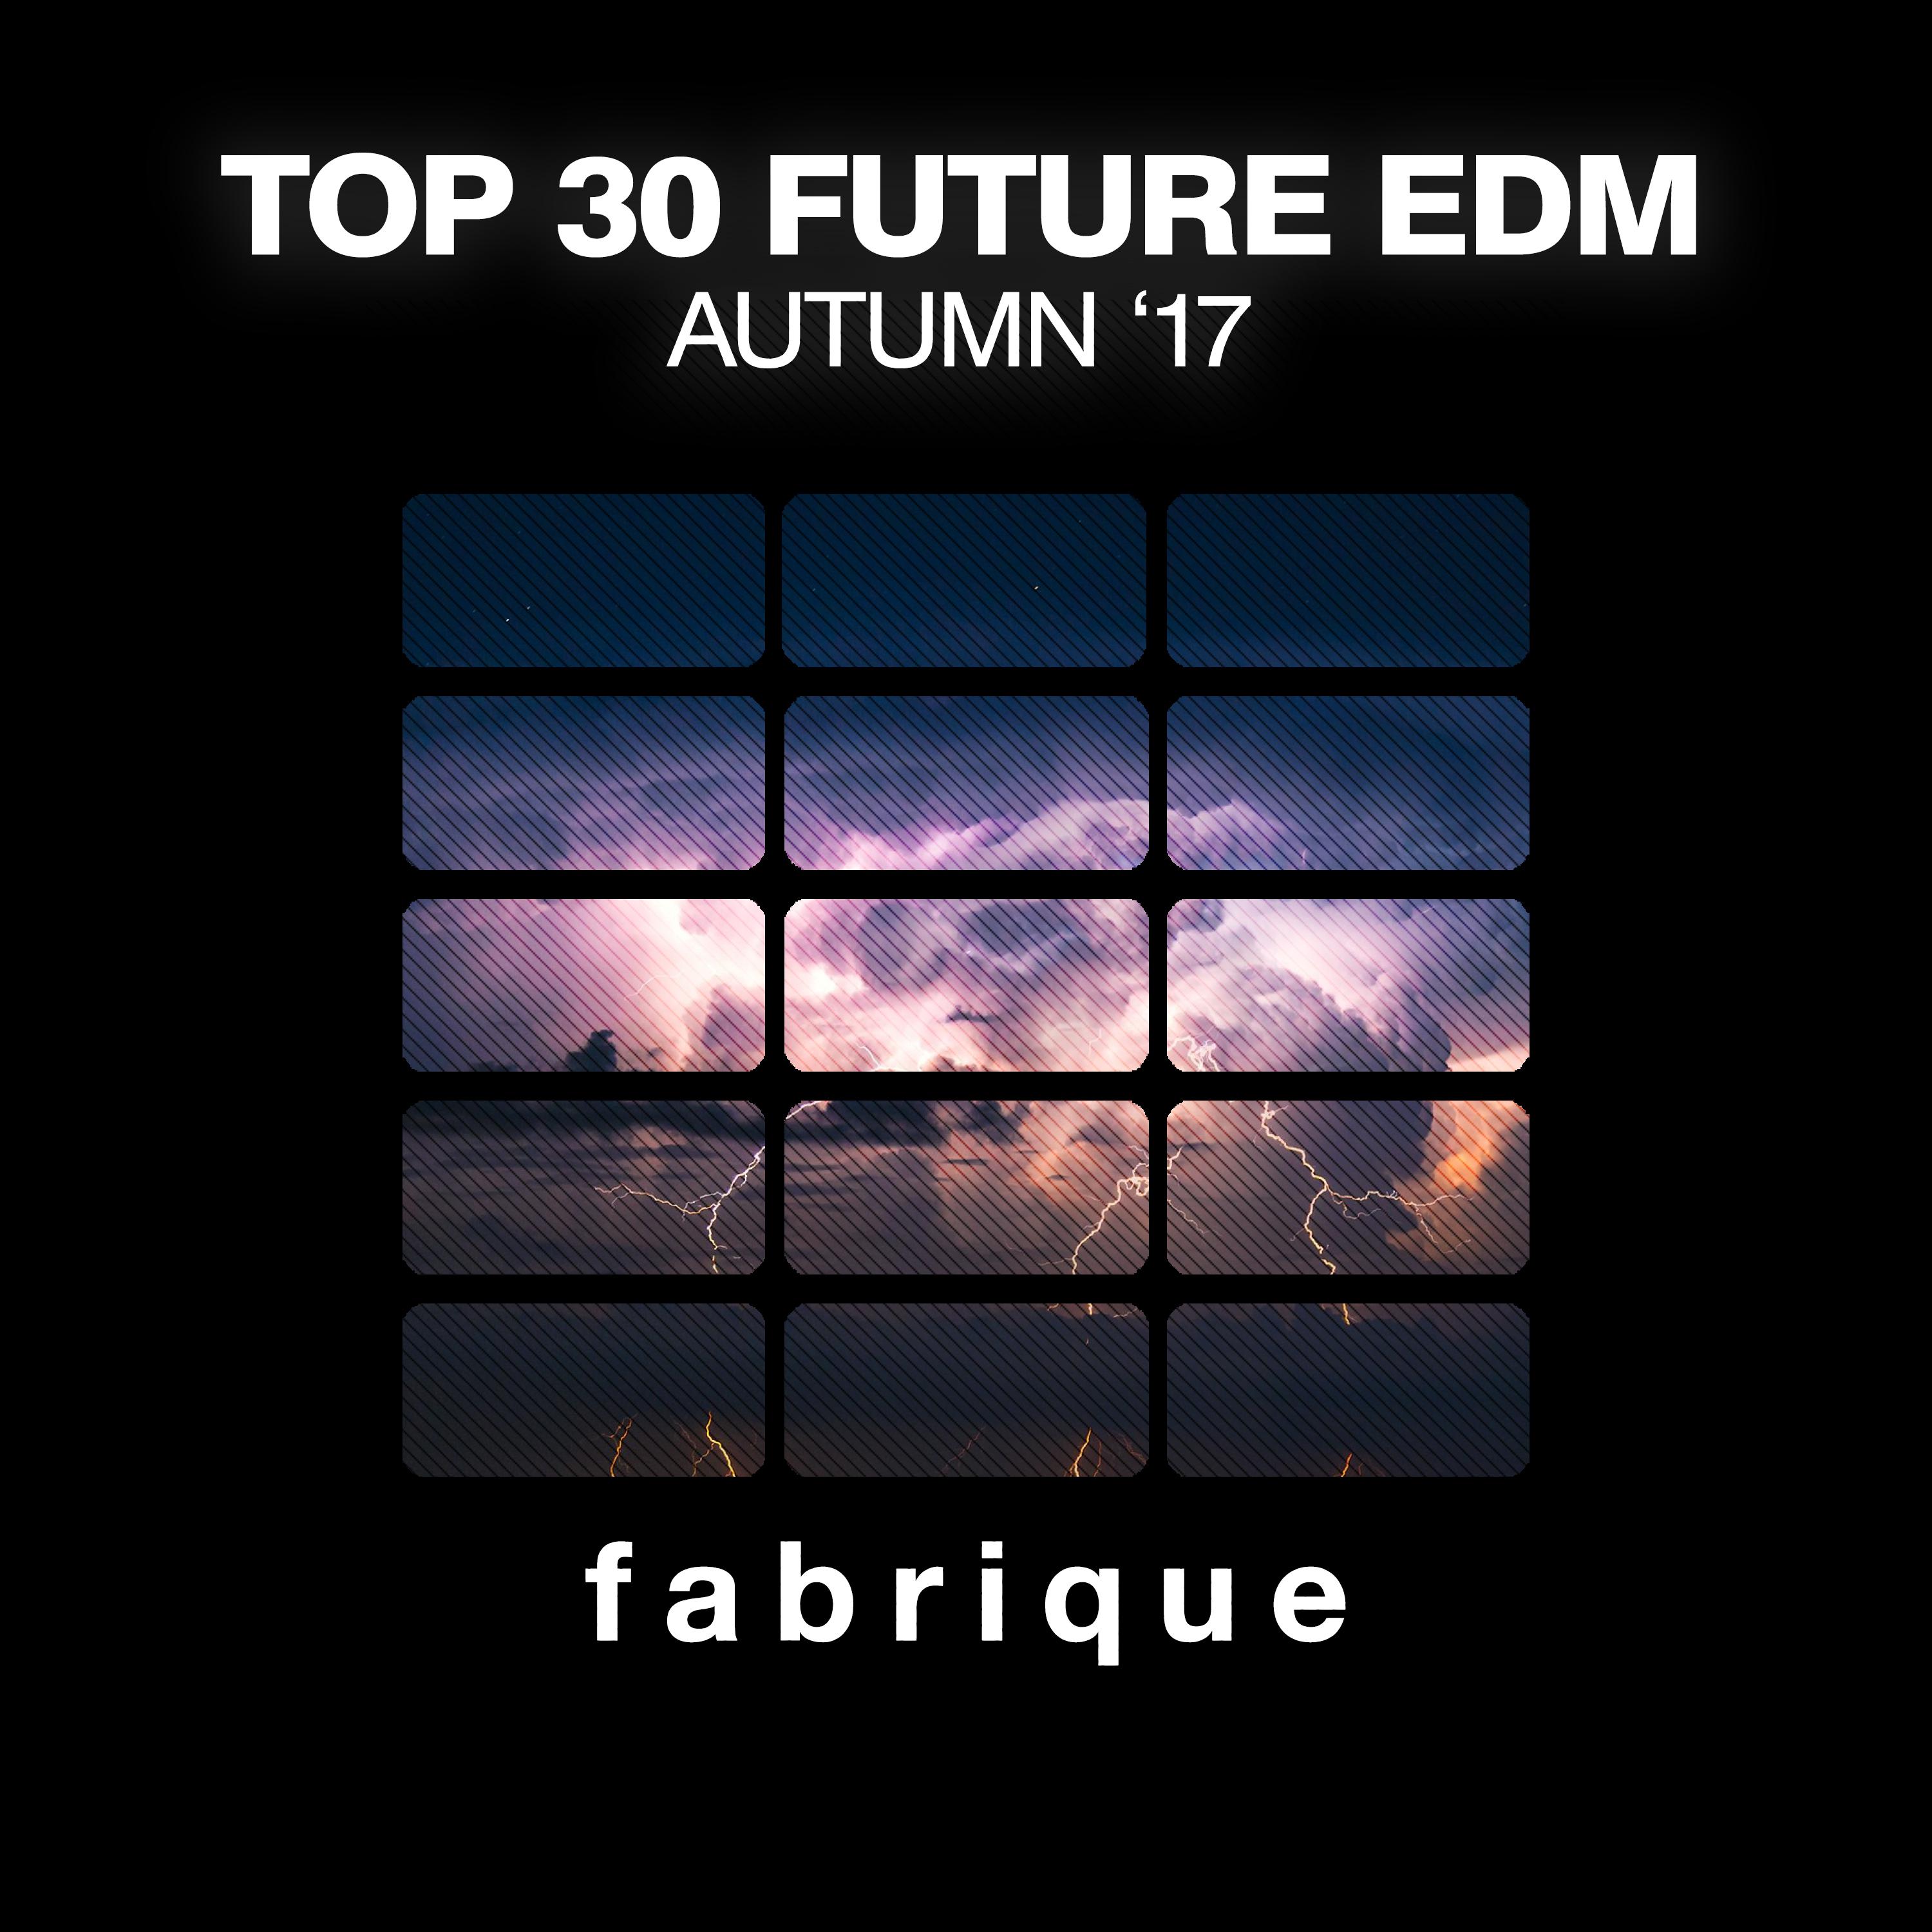 Top 30 Future EDM (Autumn '17)